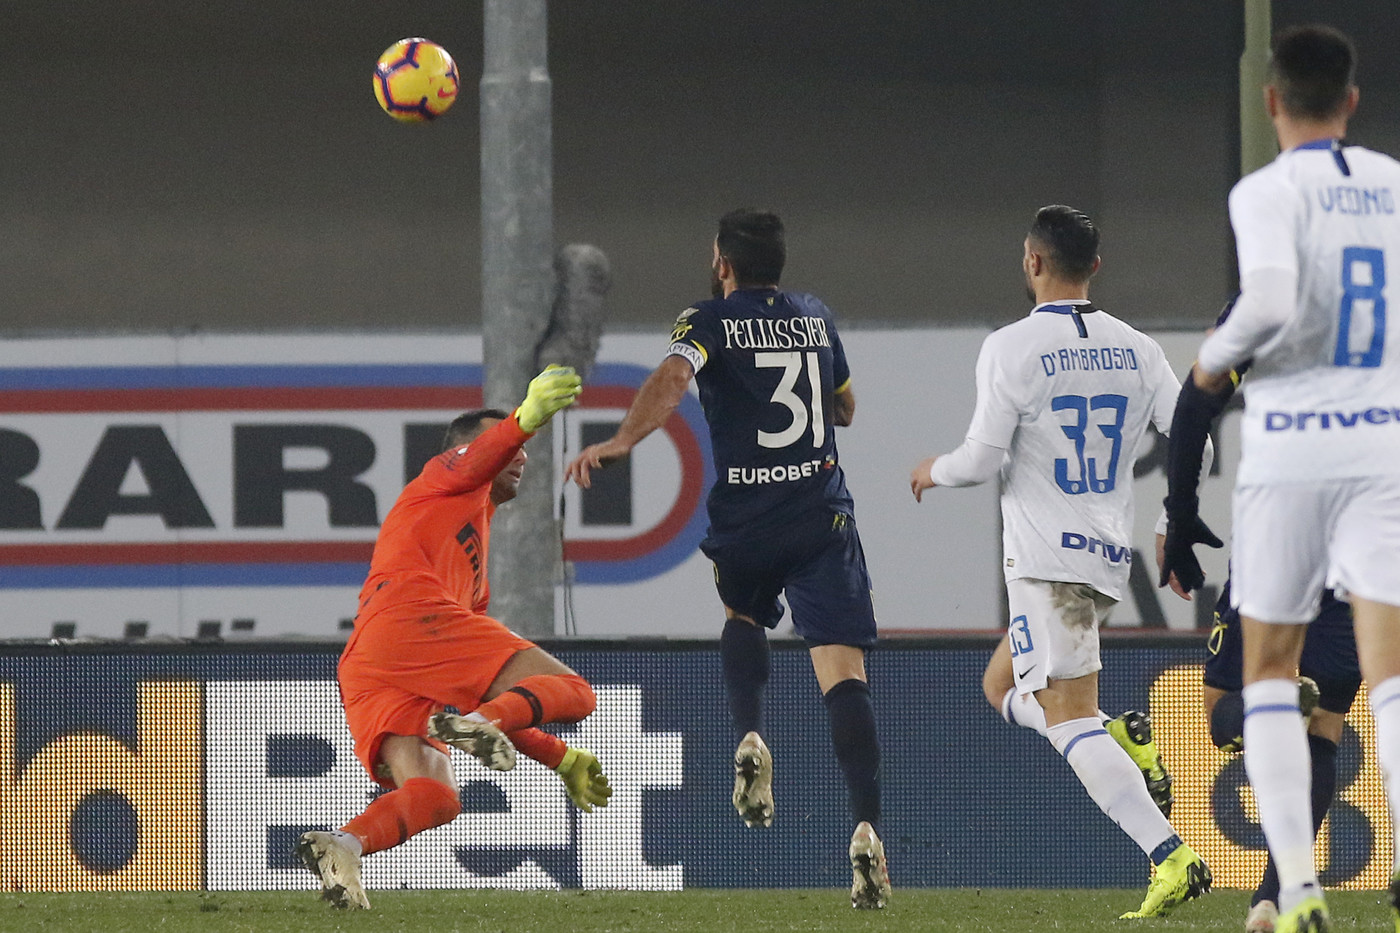 Serie A, Pellissier l’immortale replica a Perisic: tra Chievo e Inter è 1-1